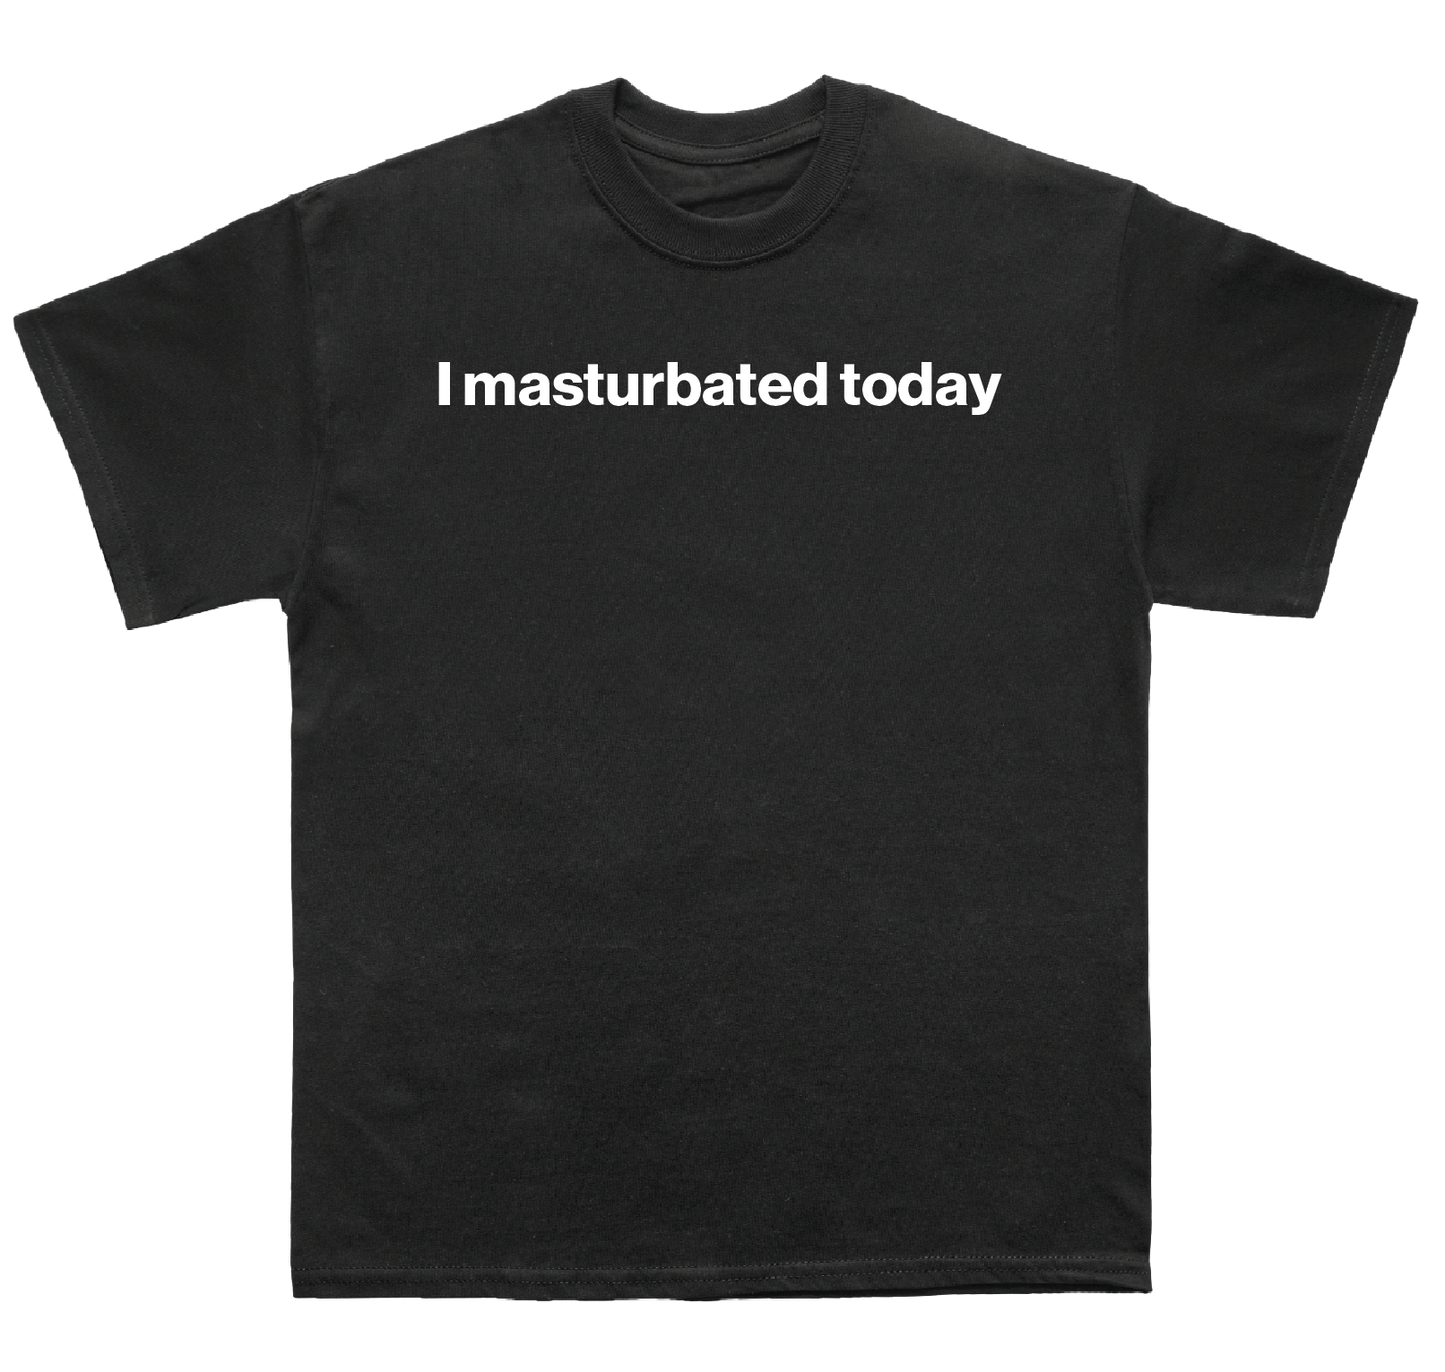 I masturbated today shirt